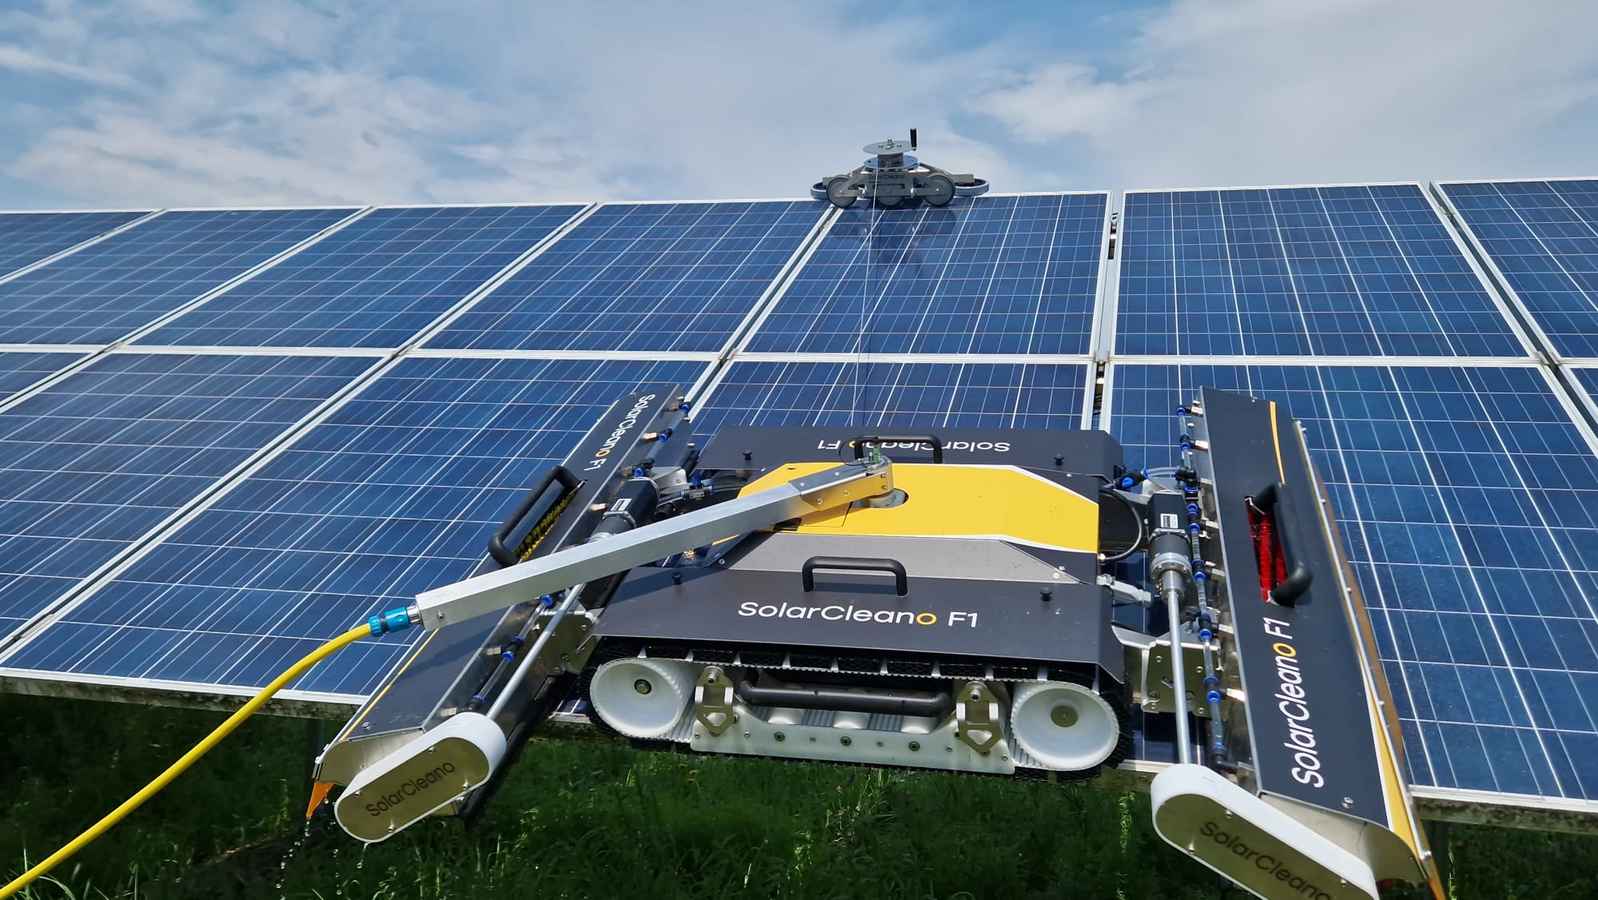 Robotic washing of solar panels